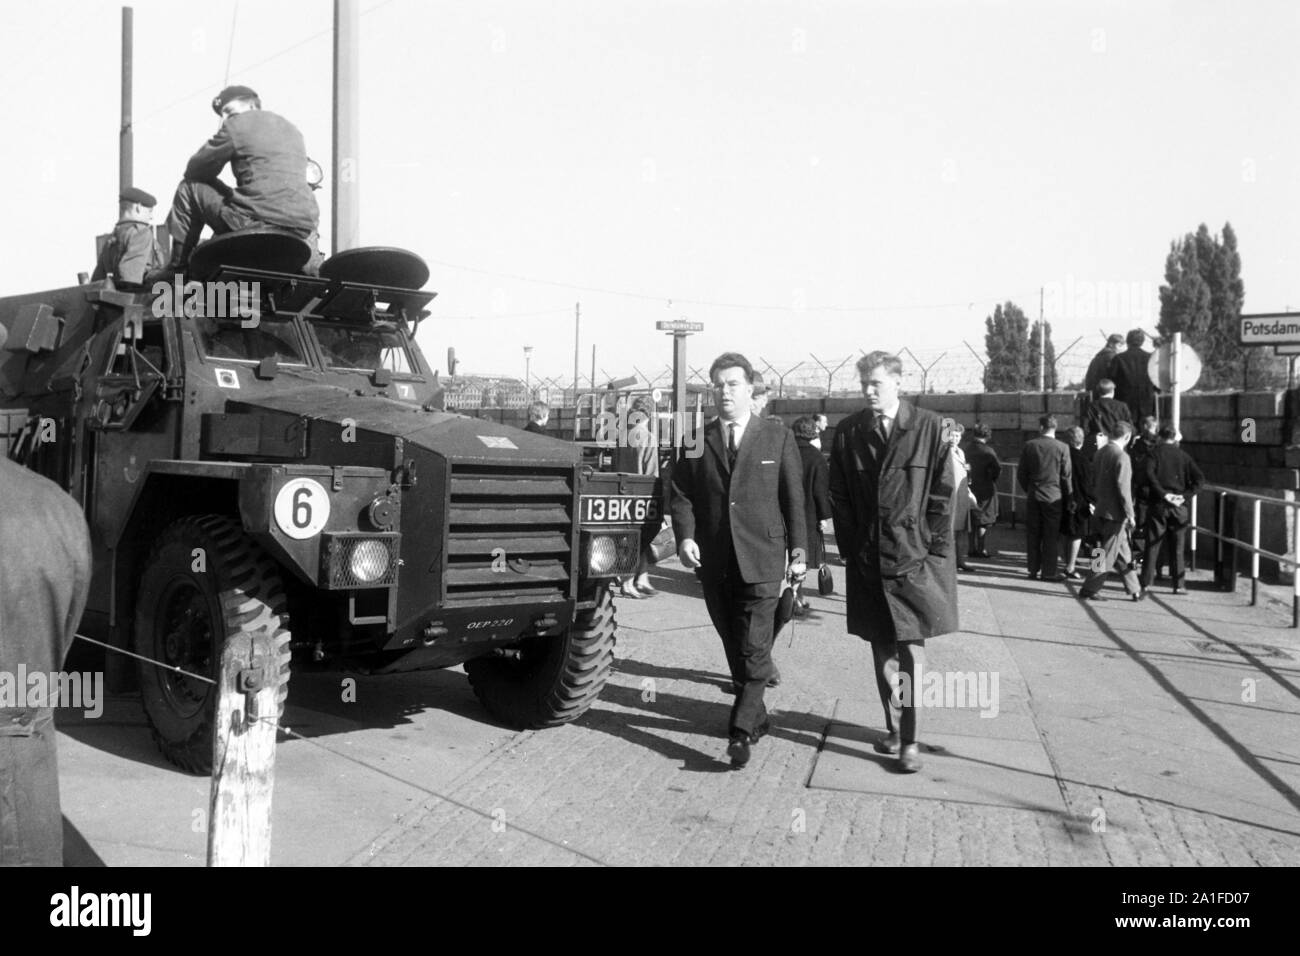 Menschen am Potsdamer Platz in Berlin mit alliiertem Militärfahrzeug, Deutschland 1962. People at Potsdamer Platz square in Berlin with Allied military vehicle, Germany 1962. Stock Photo